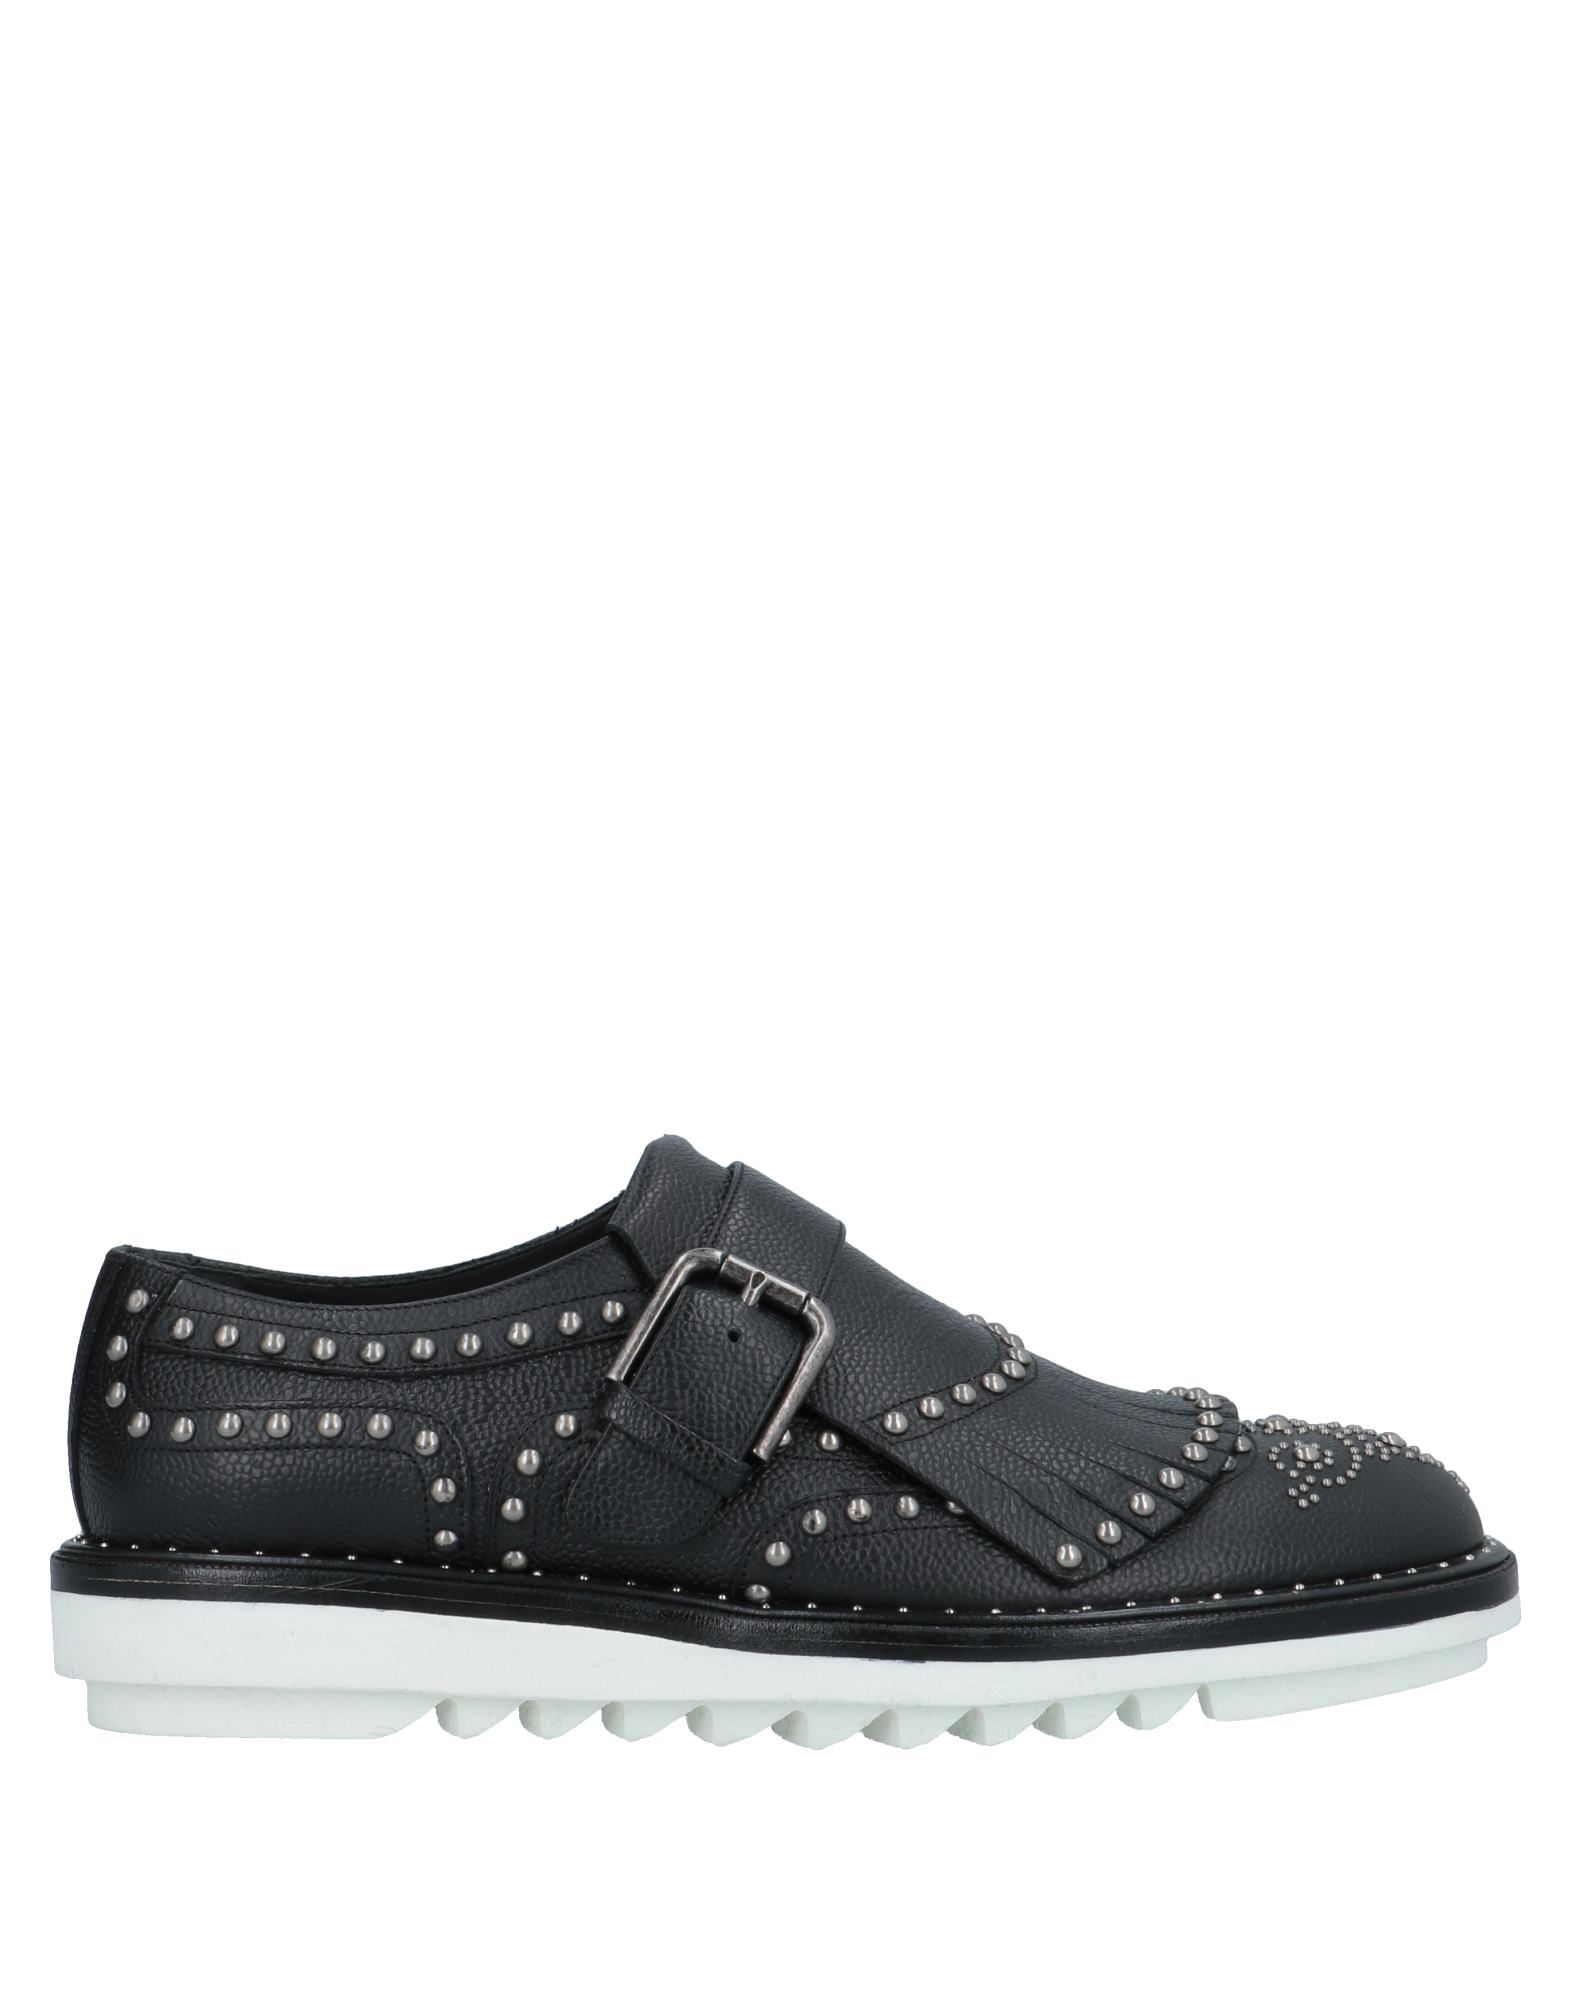 Shop Dolce & Gabbana Man Loafers Black Size 8 Calfskin